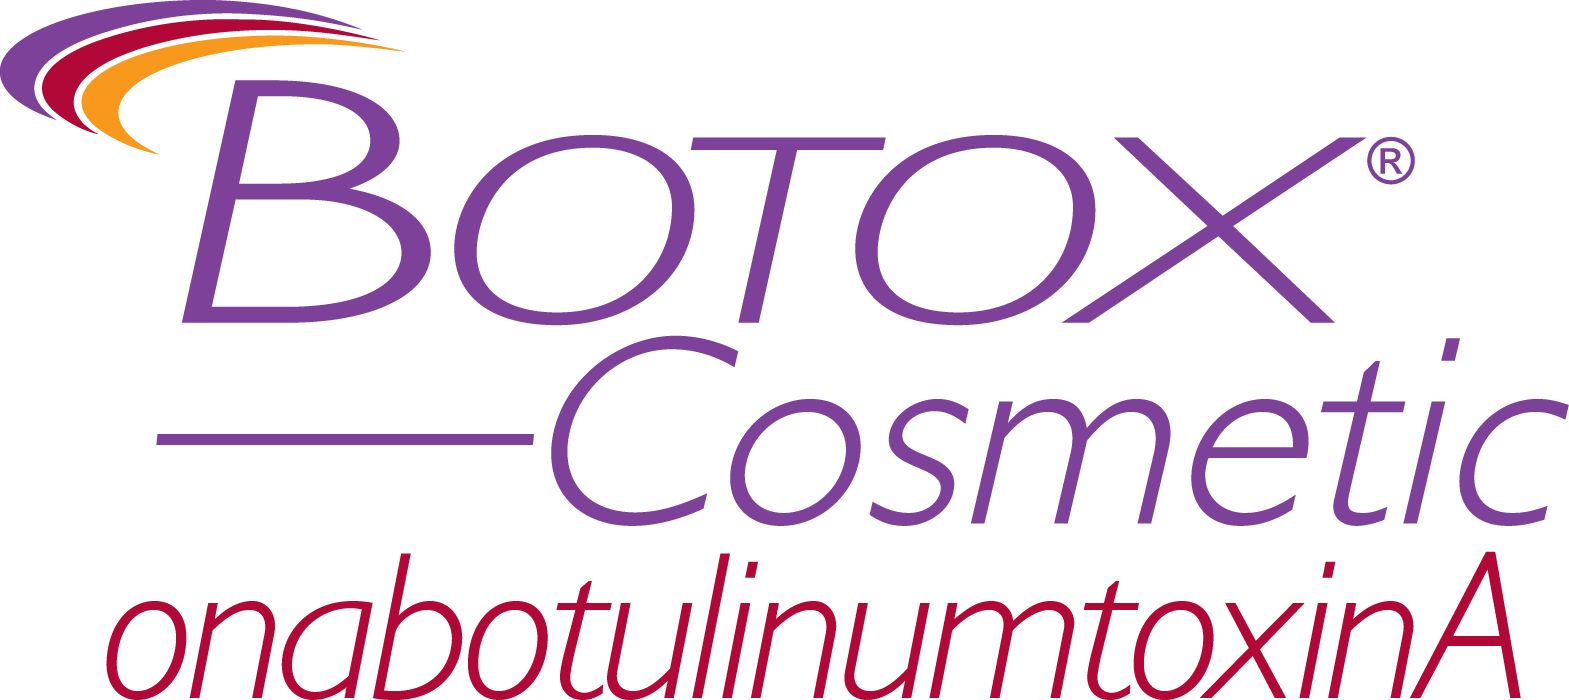 Botox Logo - Botox Injections Cosmetic Treatment. Arizona & New Mexico